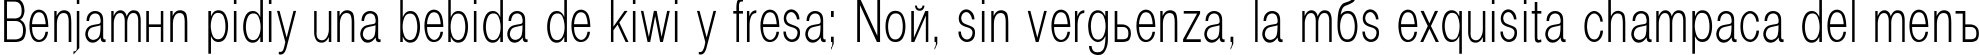 Пример написания шрифтом Helvetica_Condenced-Normal текста на испанском